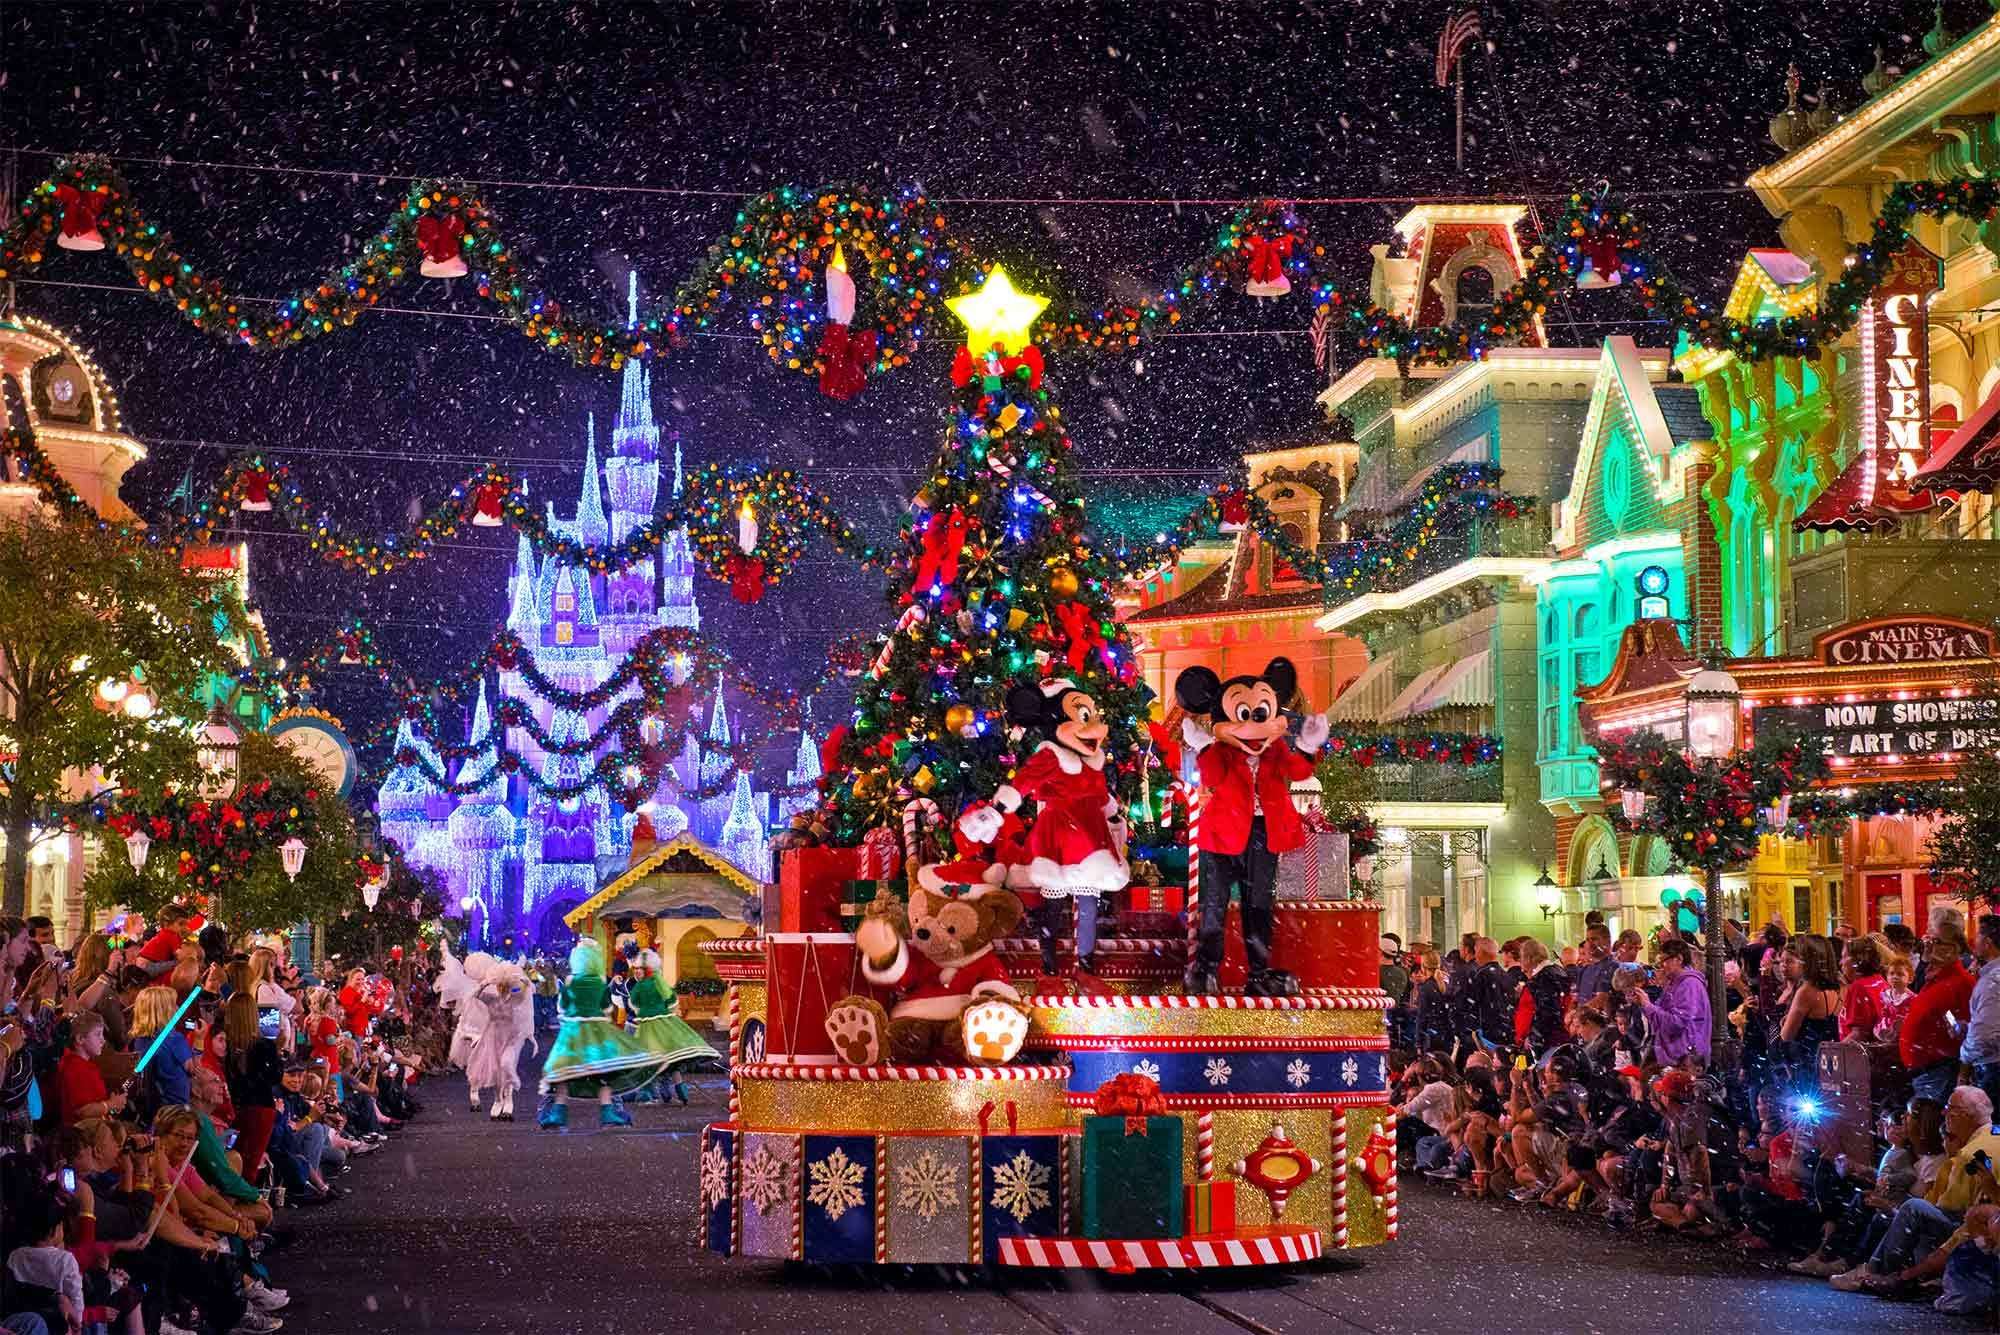 Đêm Giáng sinh đầy màu sắc ở Disneyland Paris